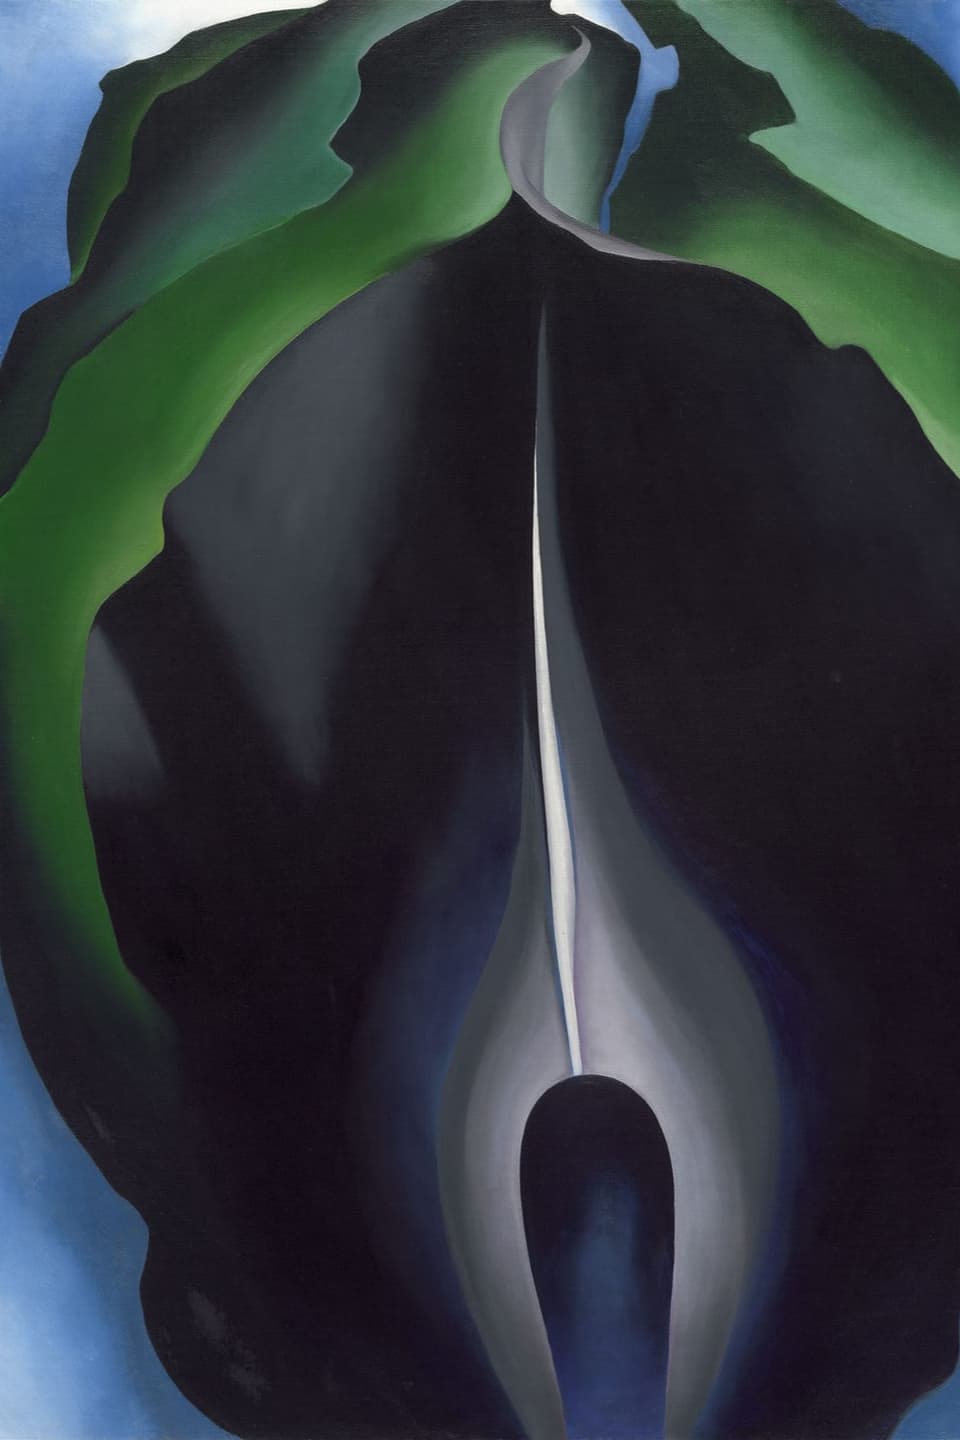 Gemälde einer dunkelblau-schwarzen kelchförmigen Blume.